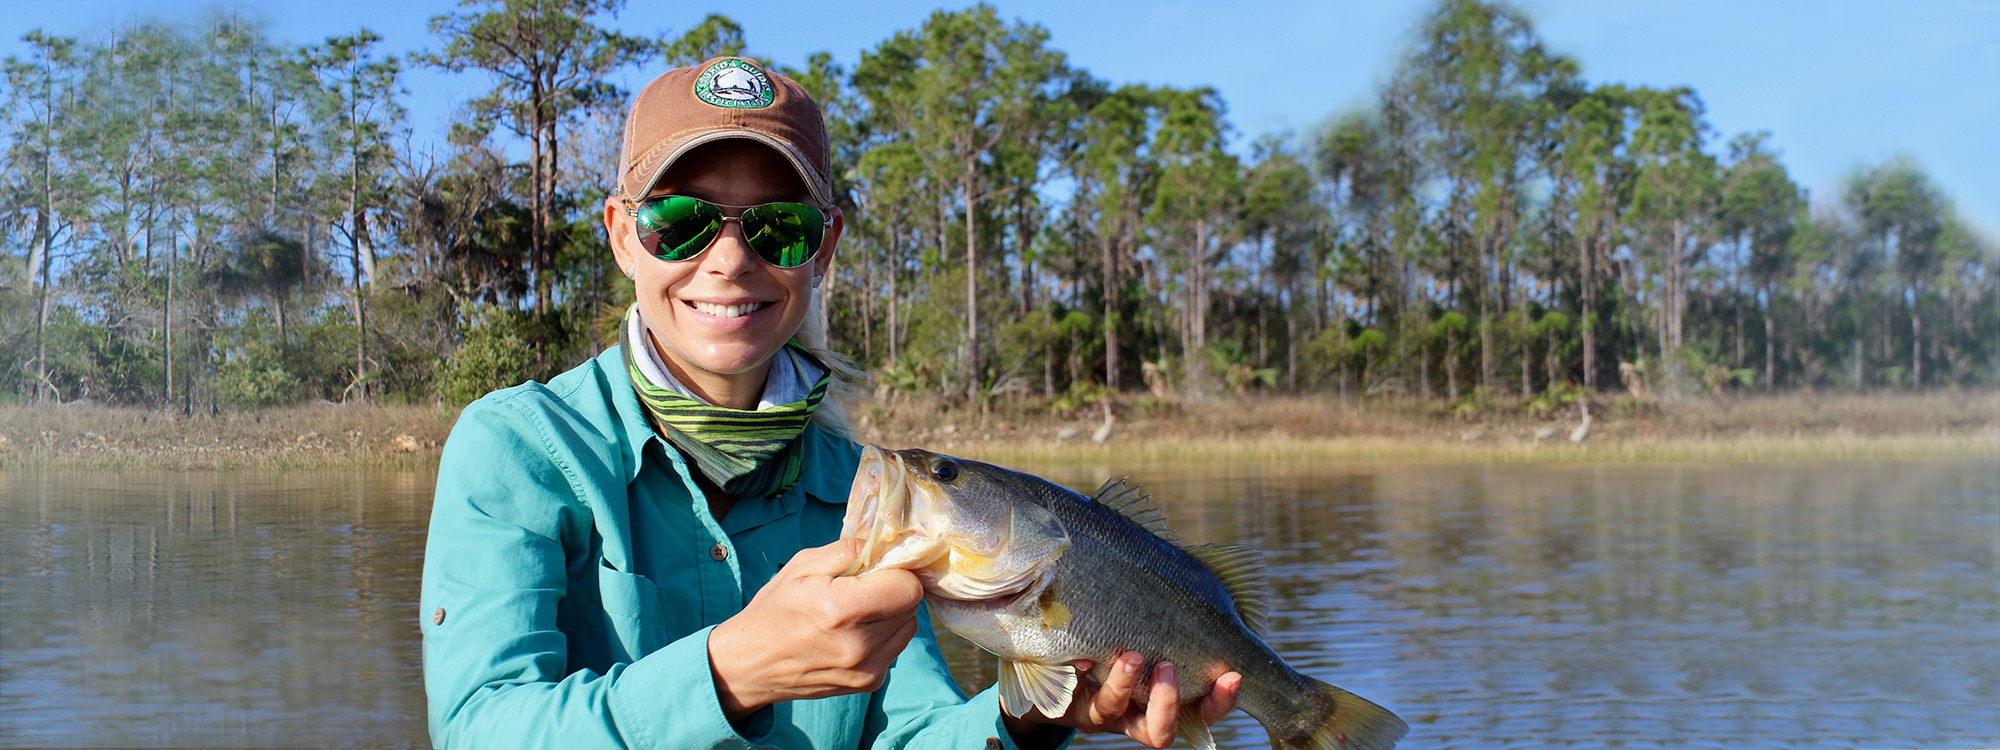 Southwest Florida Freshwater Fishing Guide